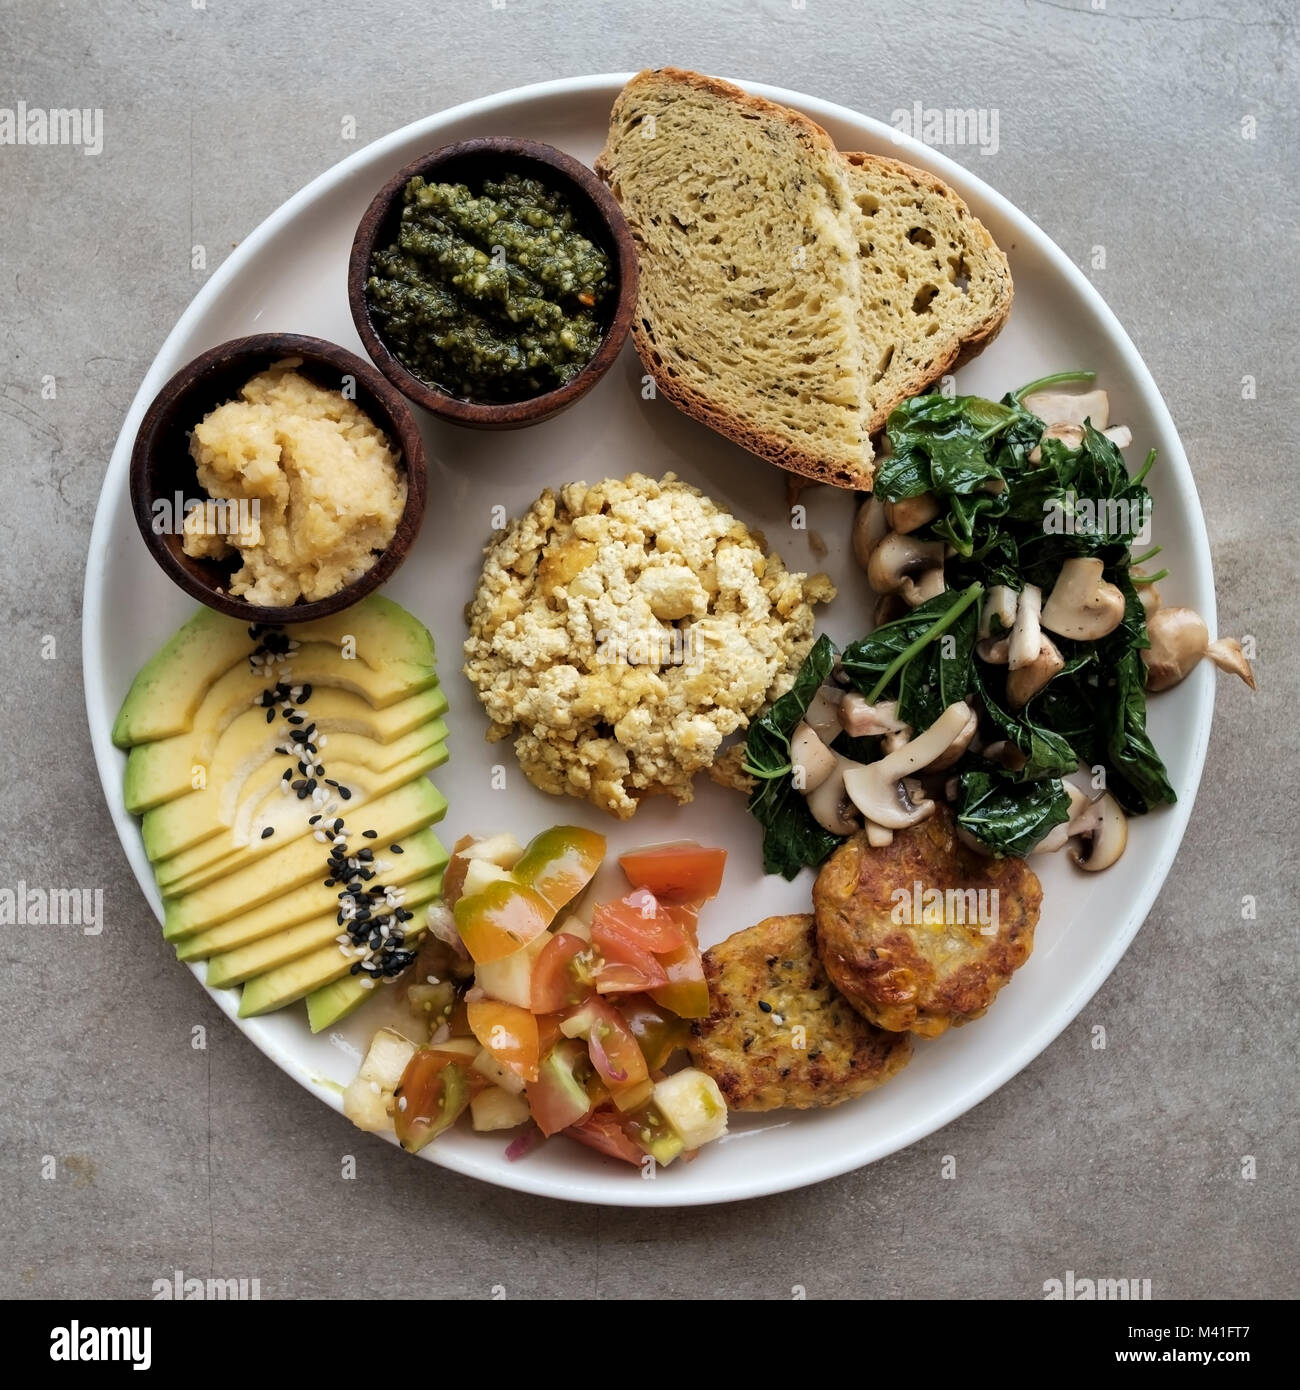 Vegan tofu con aguacate, pan, verduras y fuente de cerca en una placa. Foto de stock